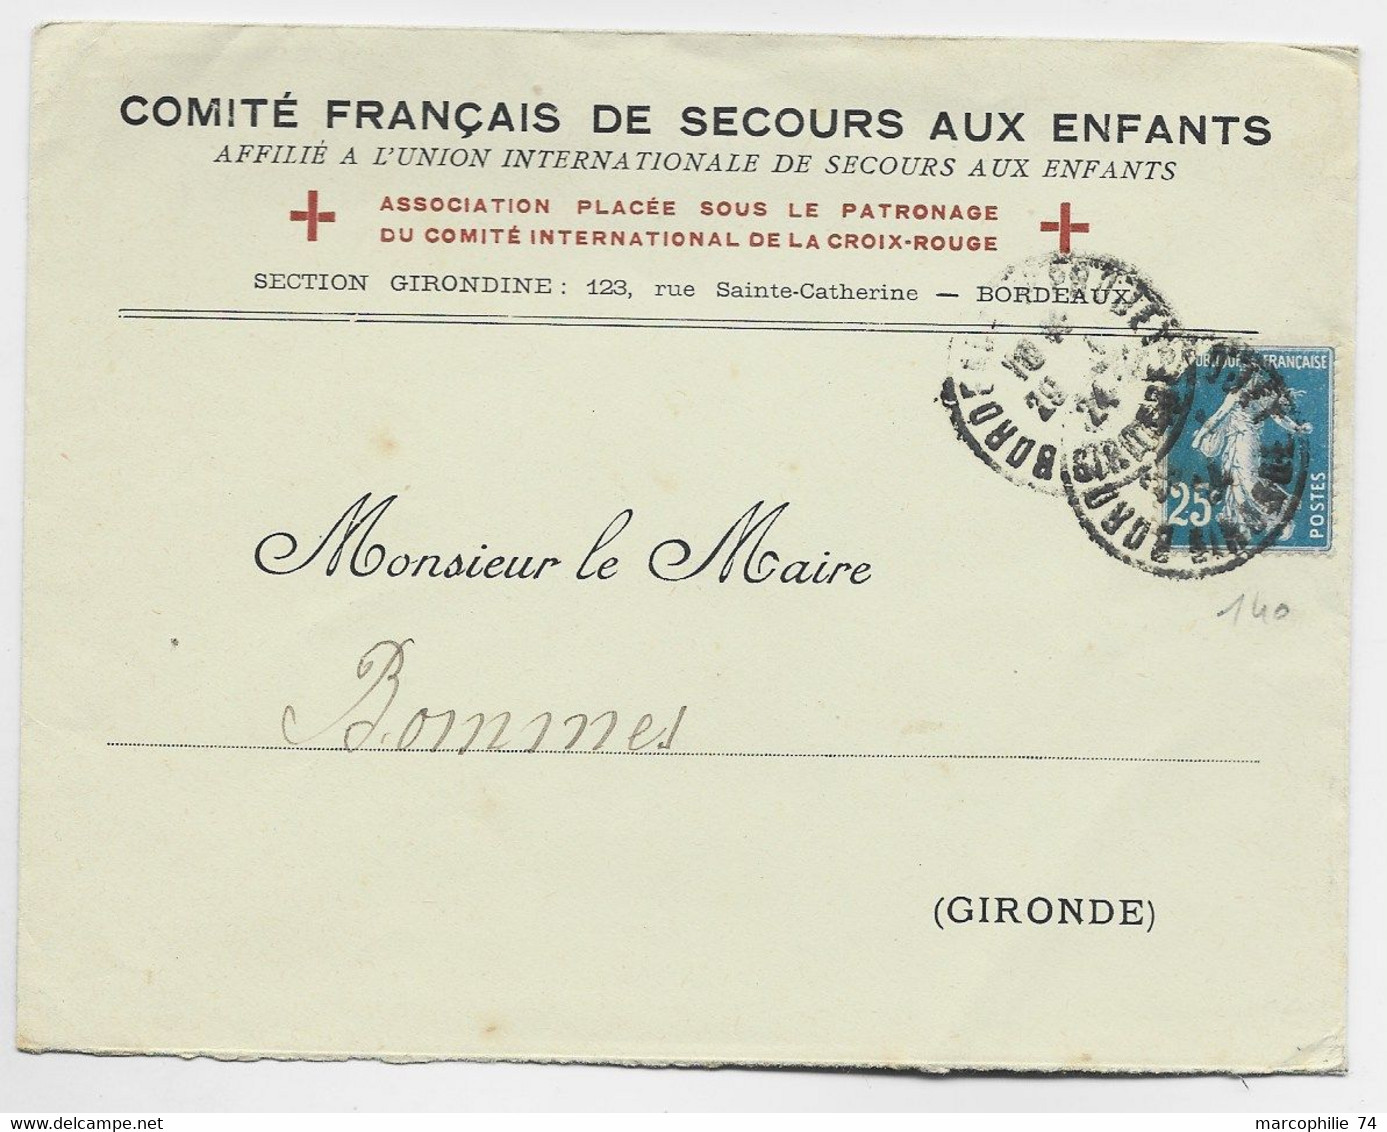 FRANCE N° 140 DEF LETTRE ENTETE COMITE FRANCAIS DE SECOURS AUX ENFANTS BORDEAUX 1924 GIRONDE - Croix Rouge